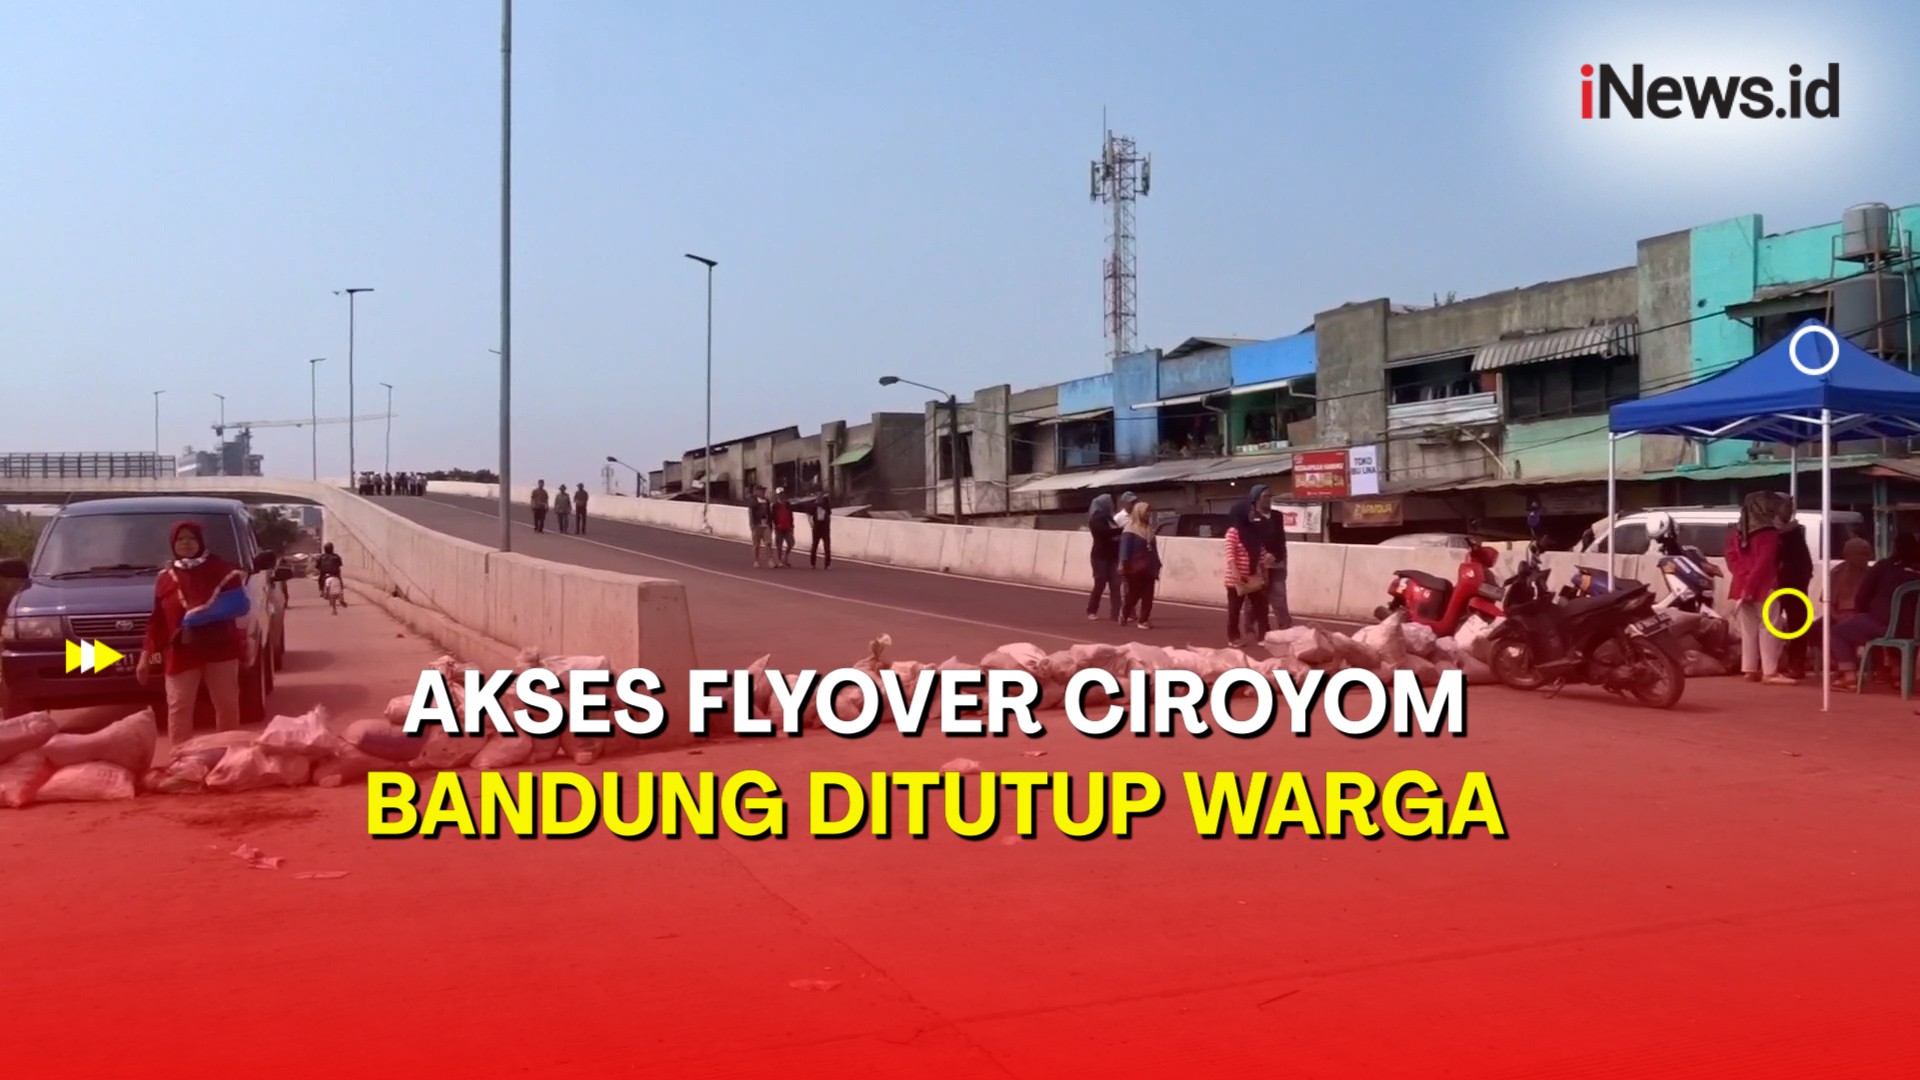 Akses Flyover Ciroyom Bandung Ditutup Warga, Polisi Sebut Belum Dibuka untuk Umum 